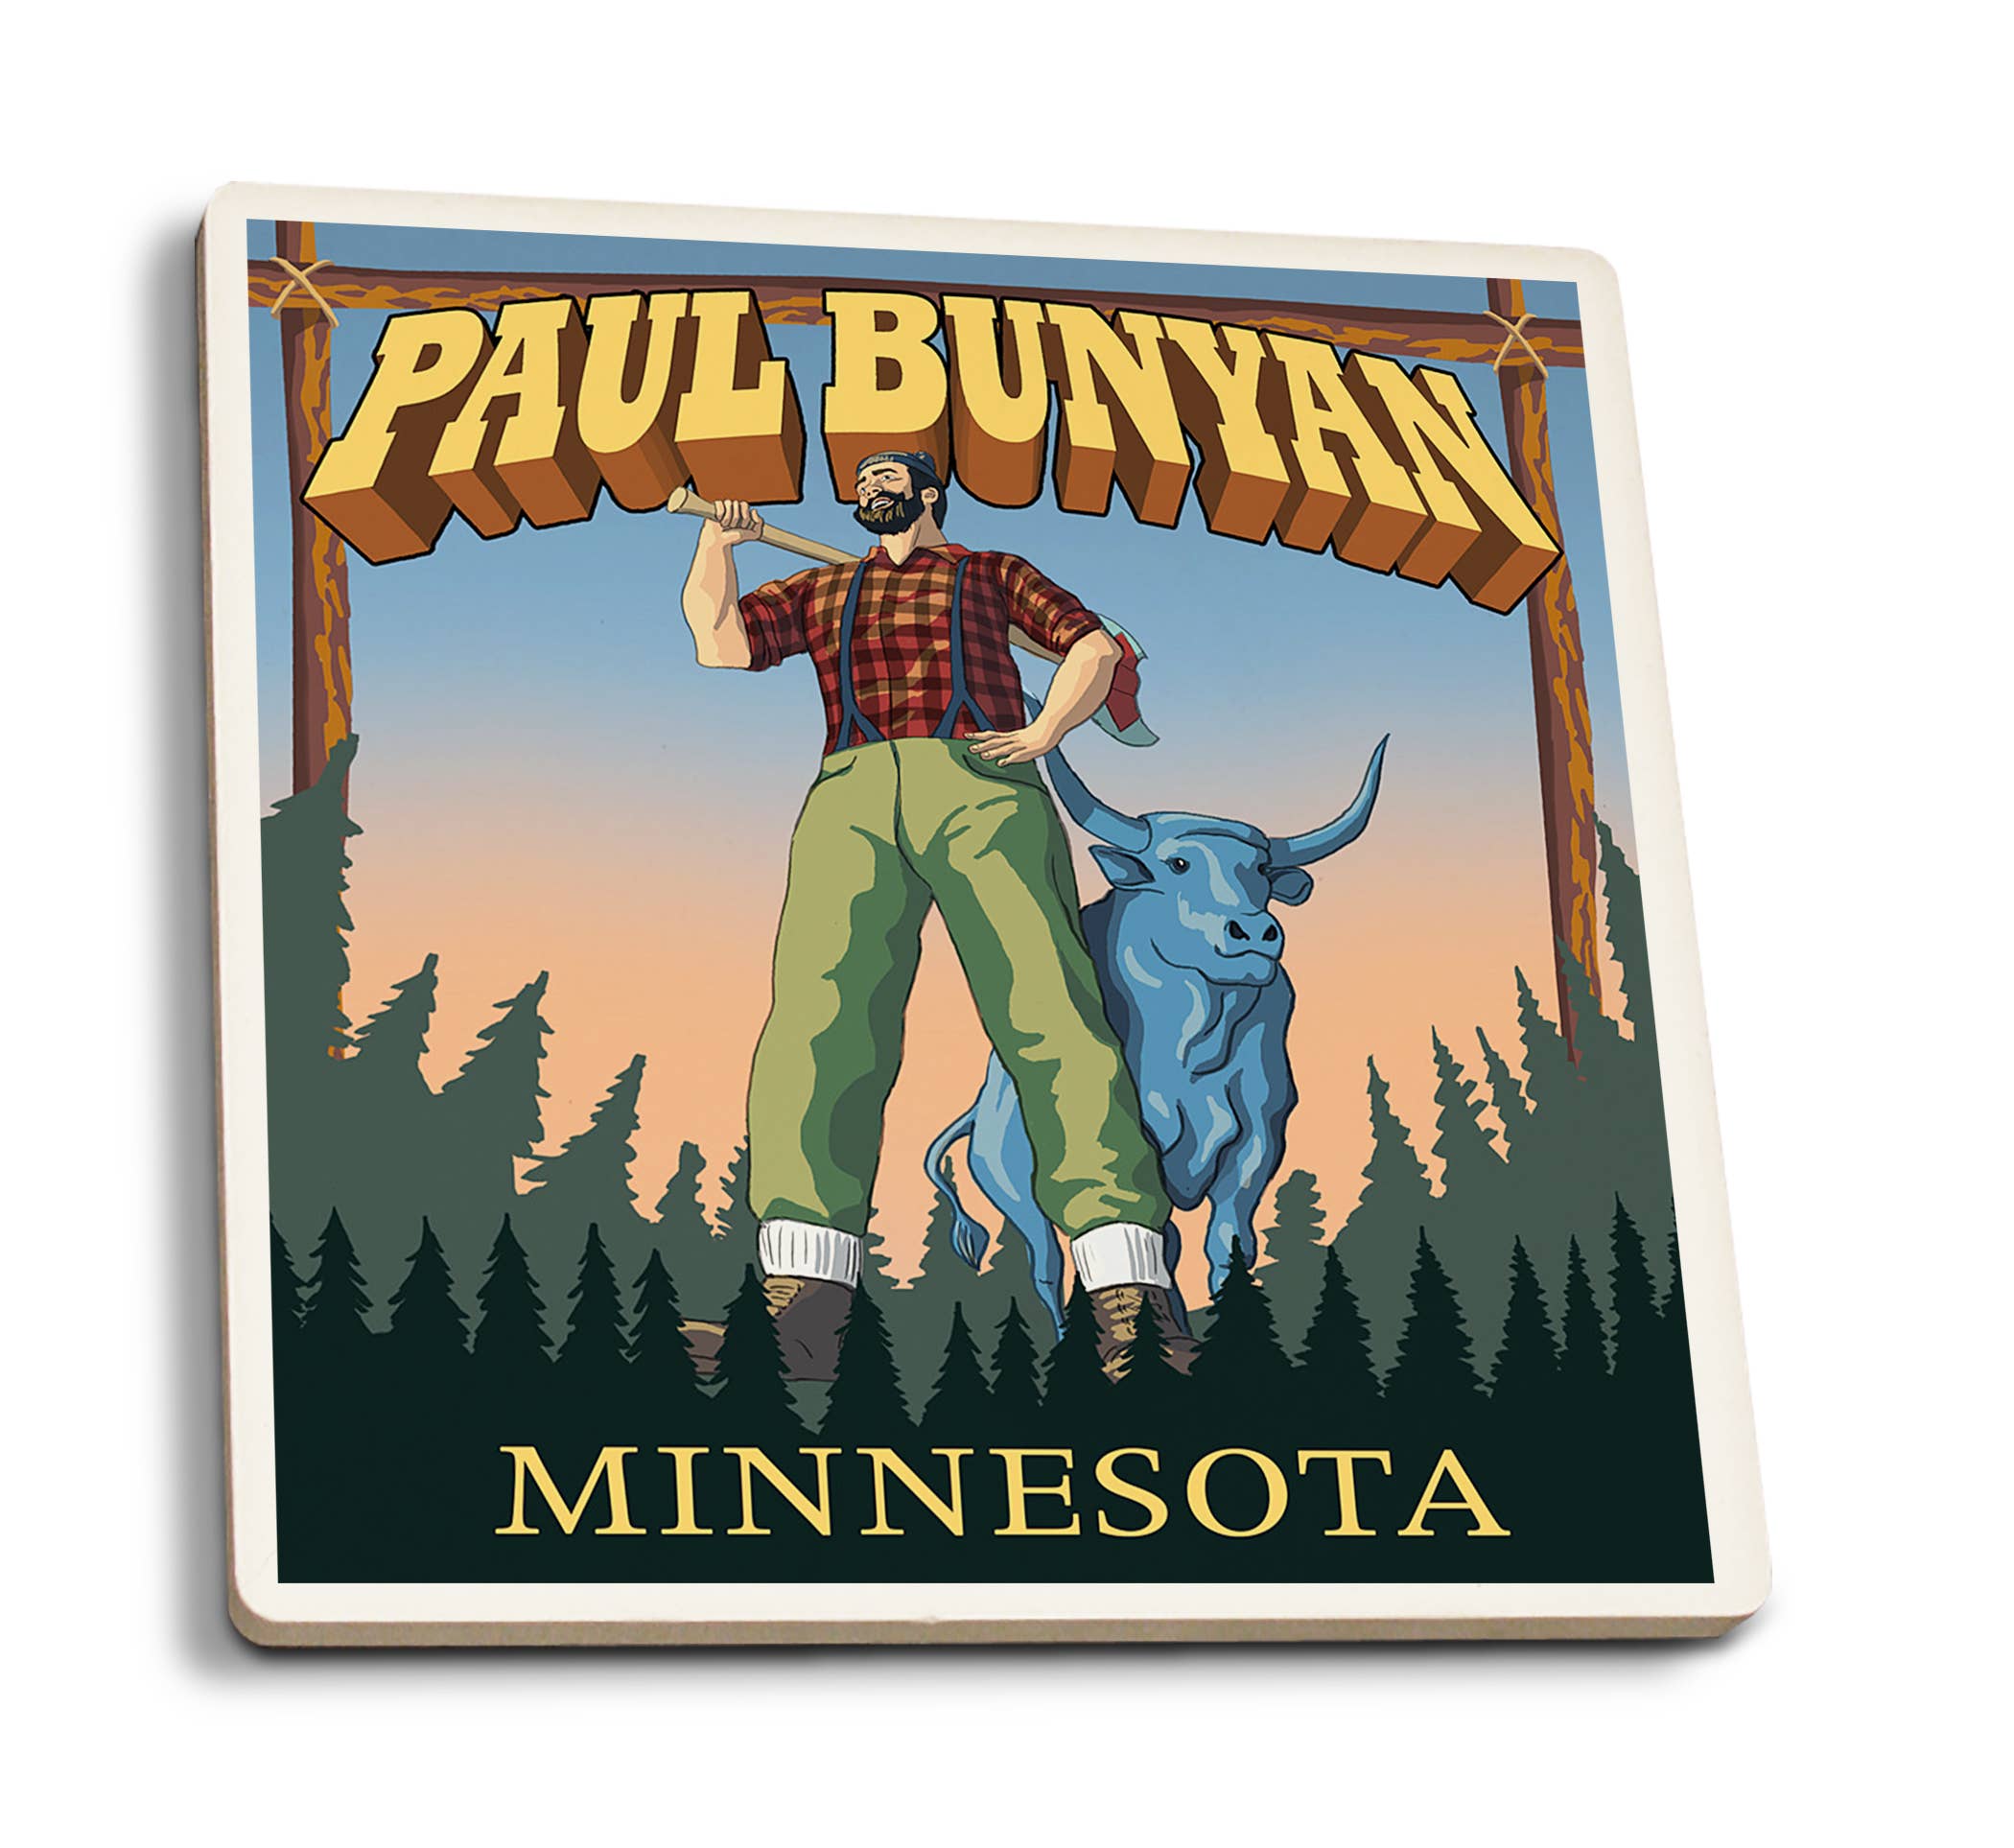 Coaster: Minnesota, Paul Bunyan